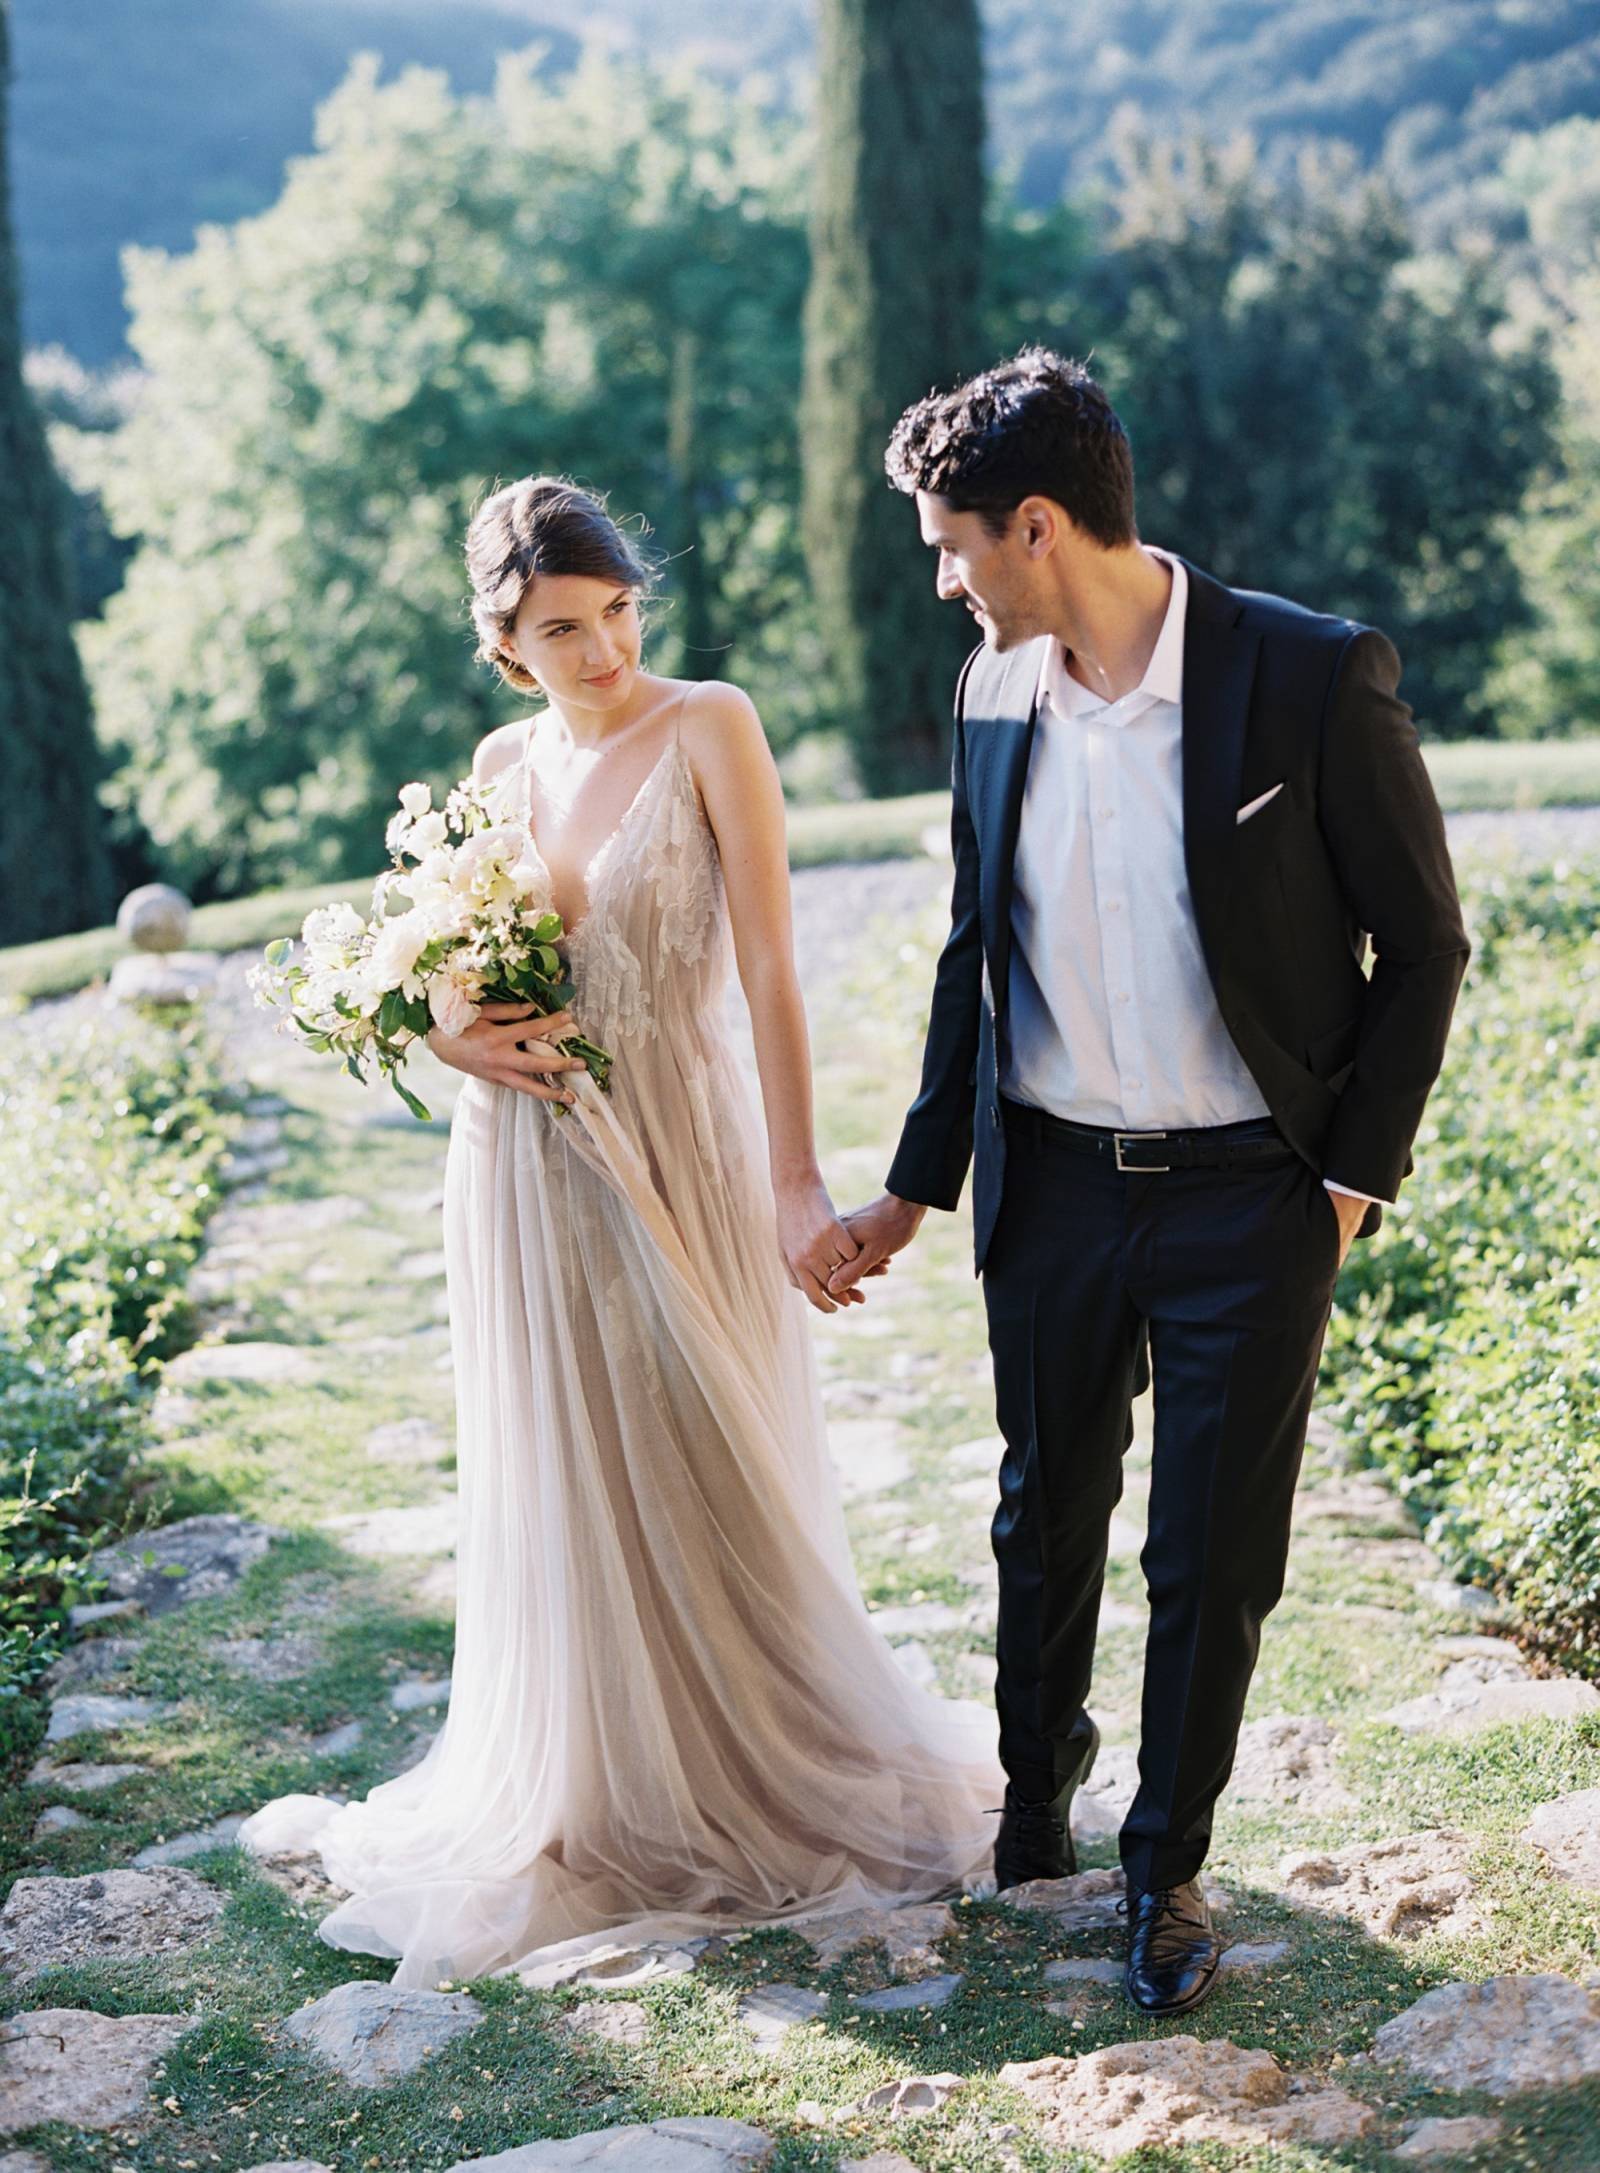 Свадьба в европейском стиле — оформление, платья, аксессуары